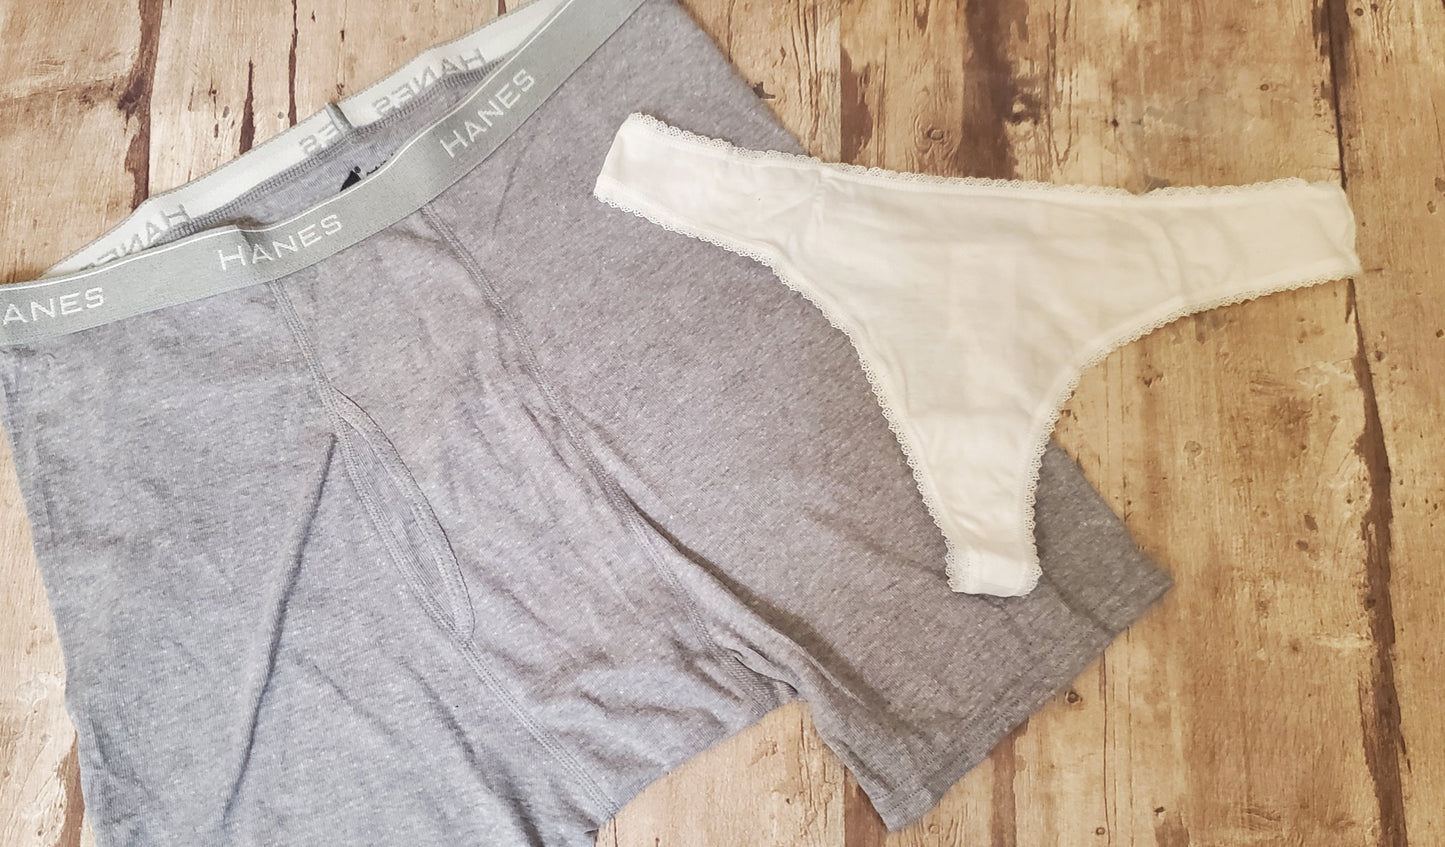 Men's briefs underwear " The Force"